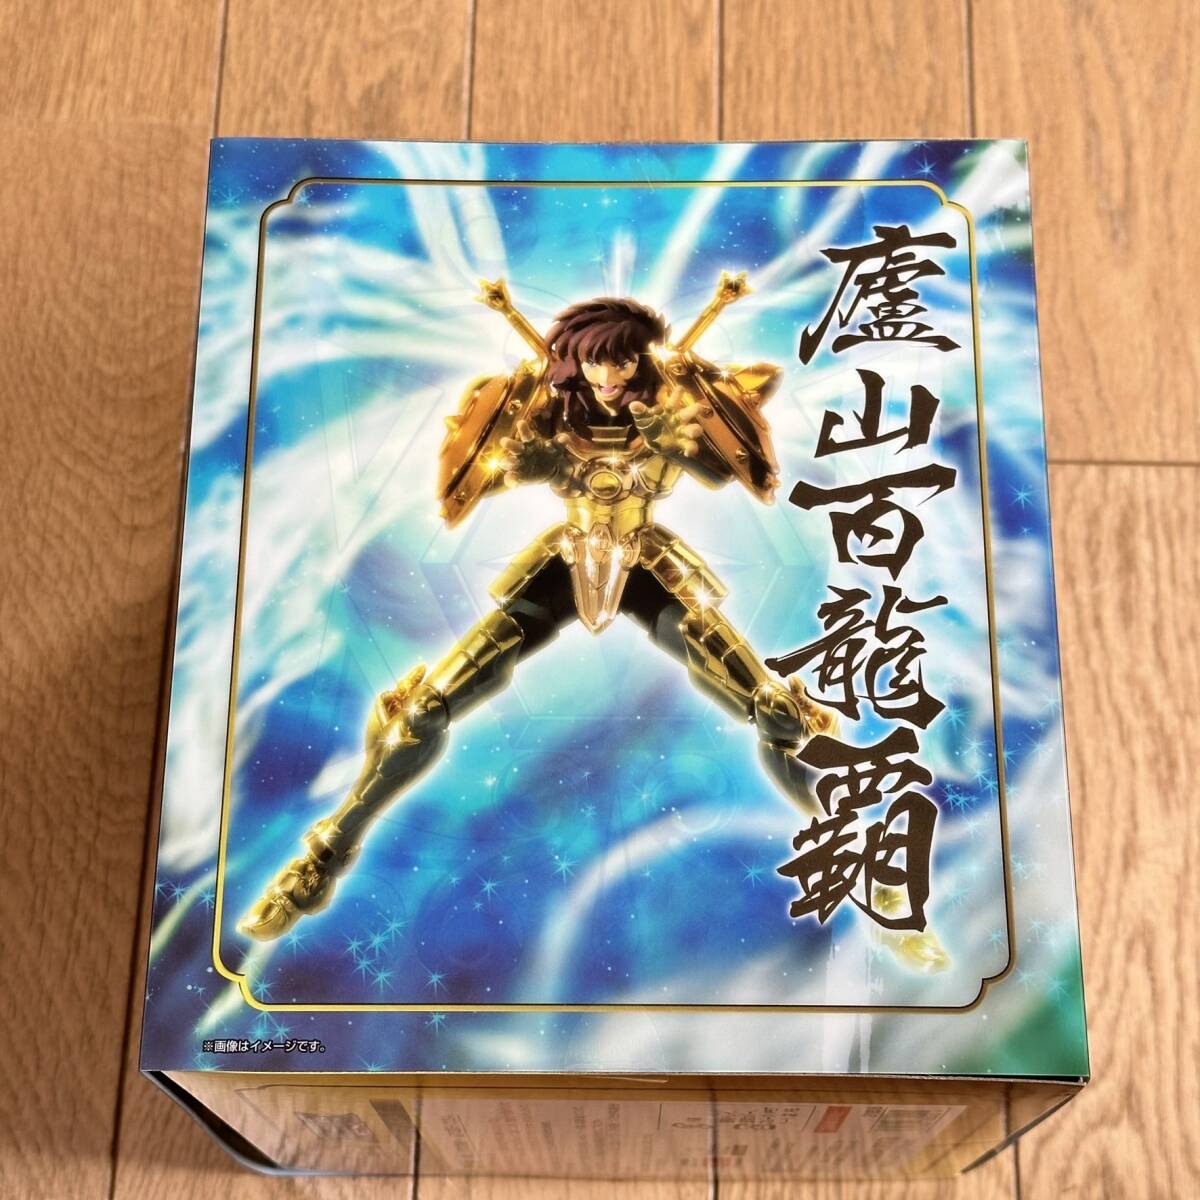 [1 иен ][ нераспечатанный ] Saint Seiya Myth Cloth EX Saint Seiya Live la..< Revival версия > примерно 170mm покрашен передвижной фигурка BANDAI